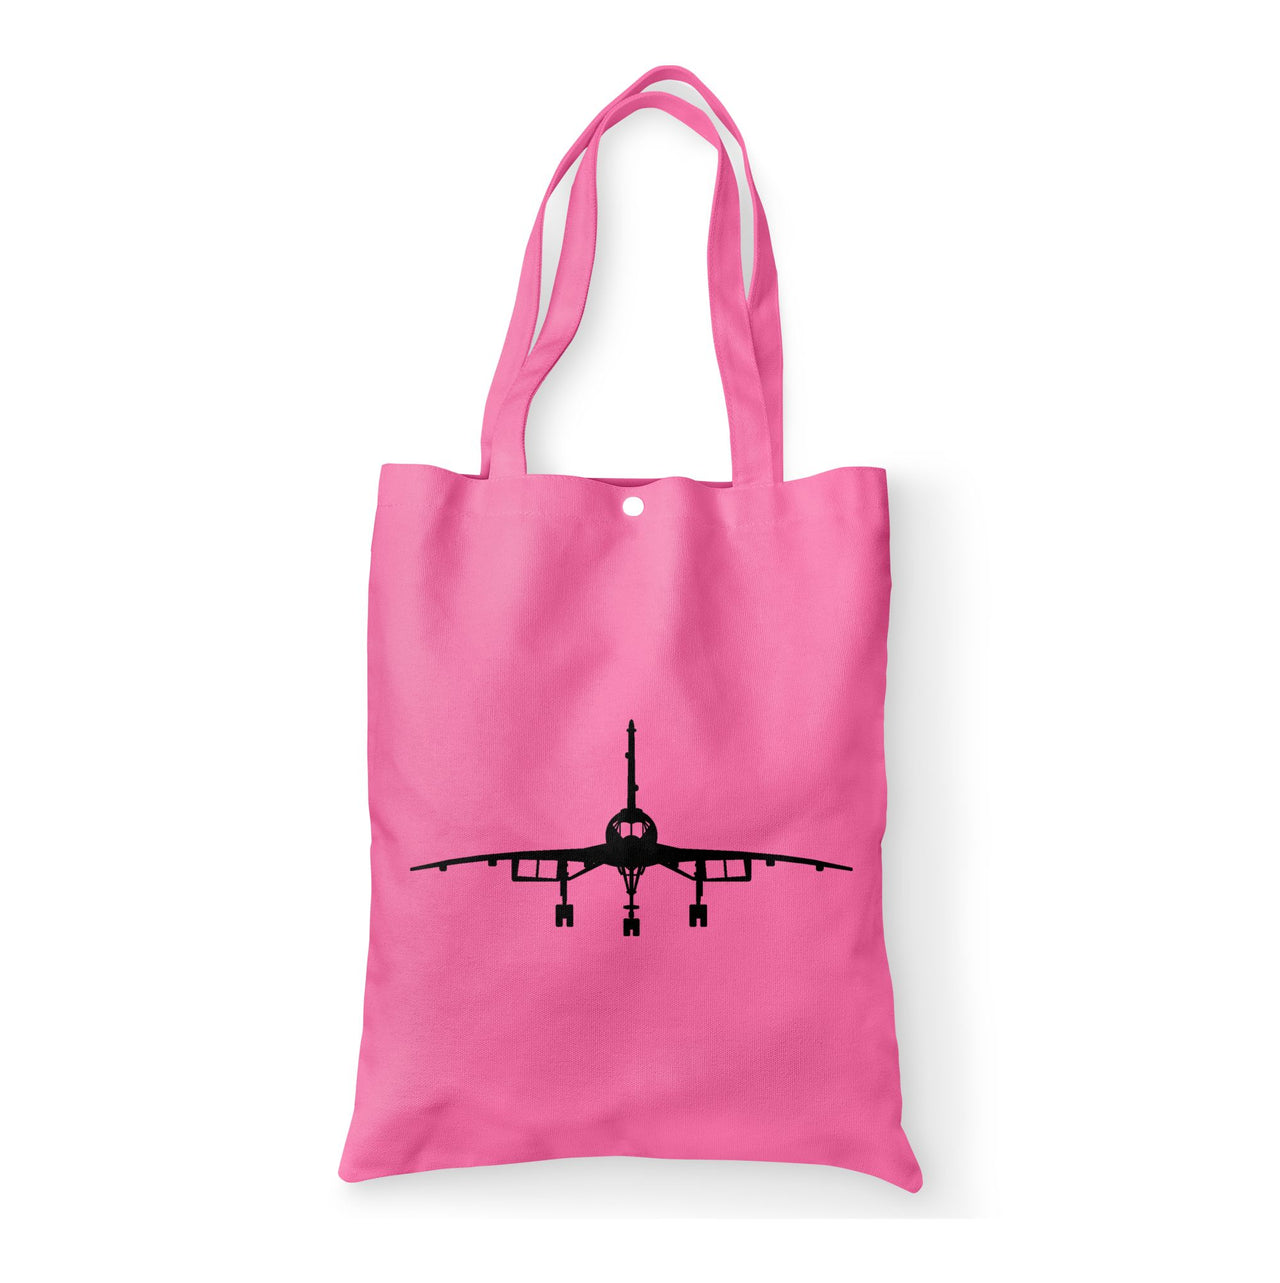 Concorde Silhouette Designed Tote Bags